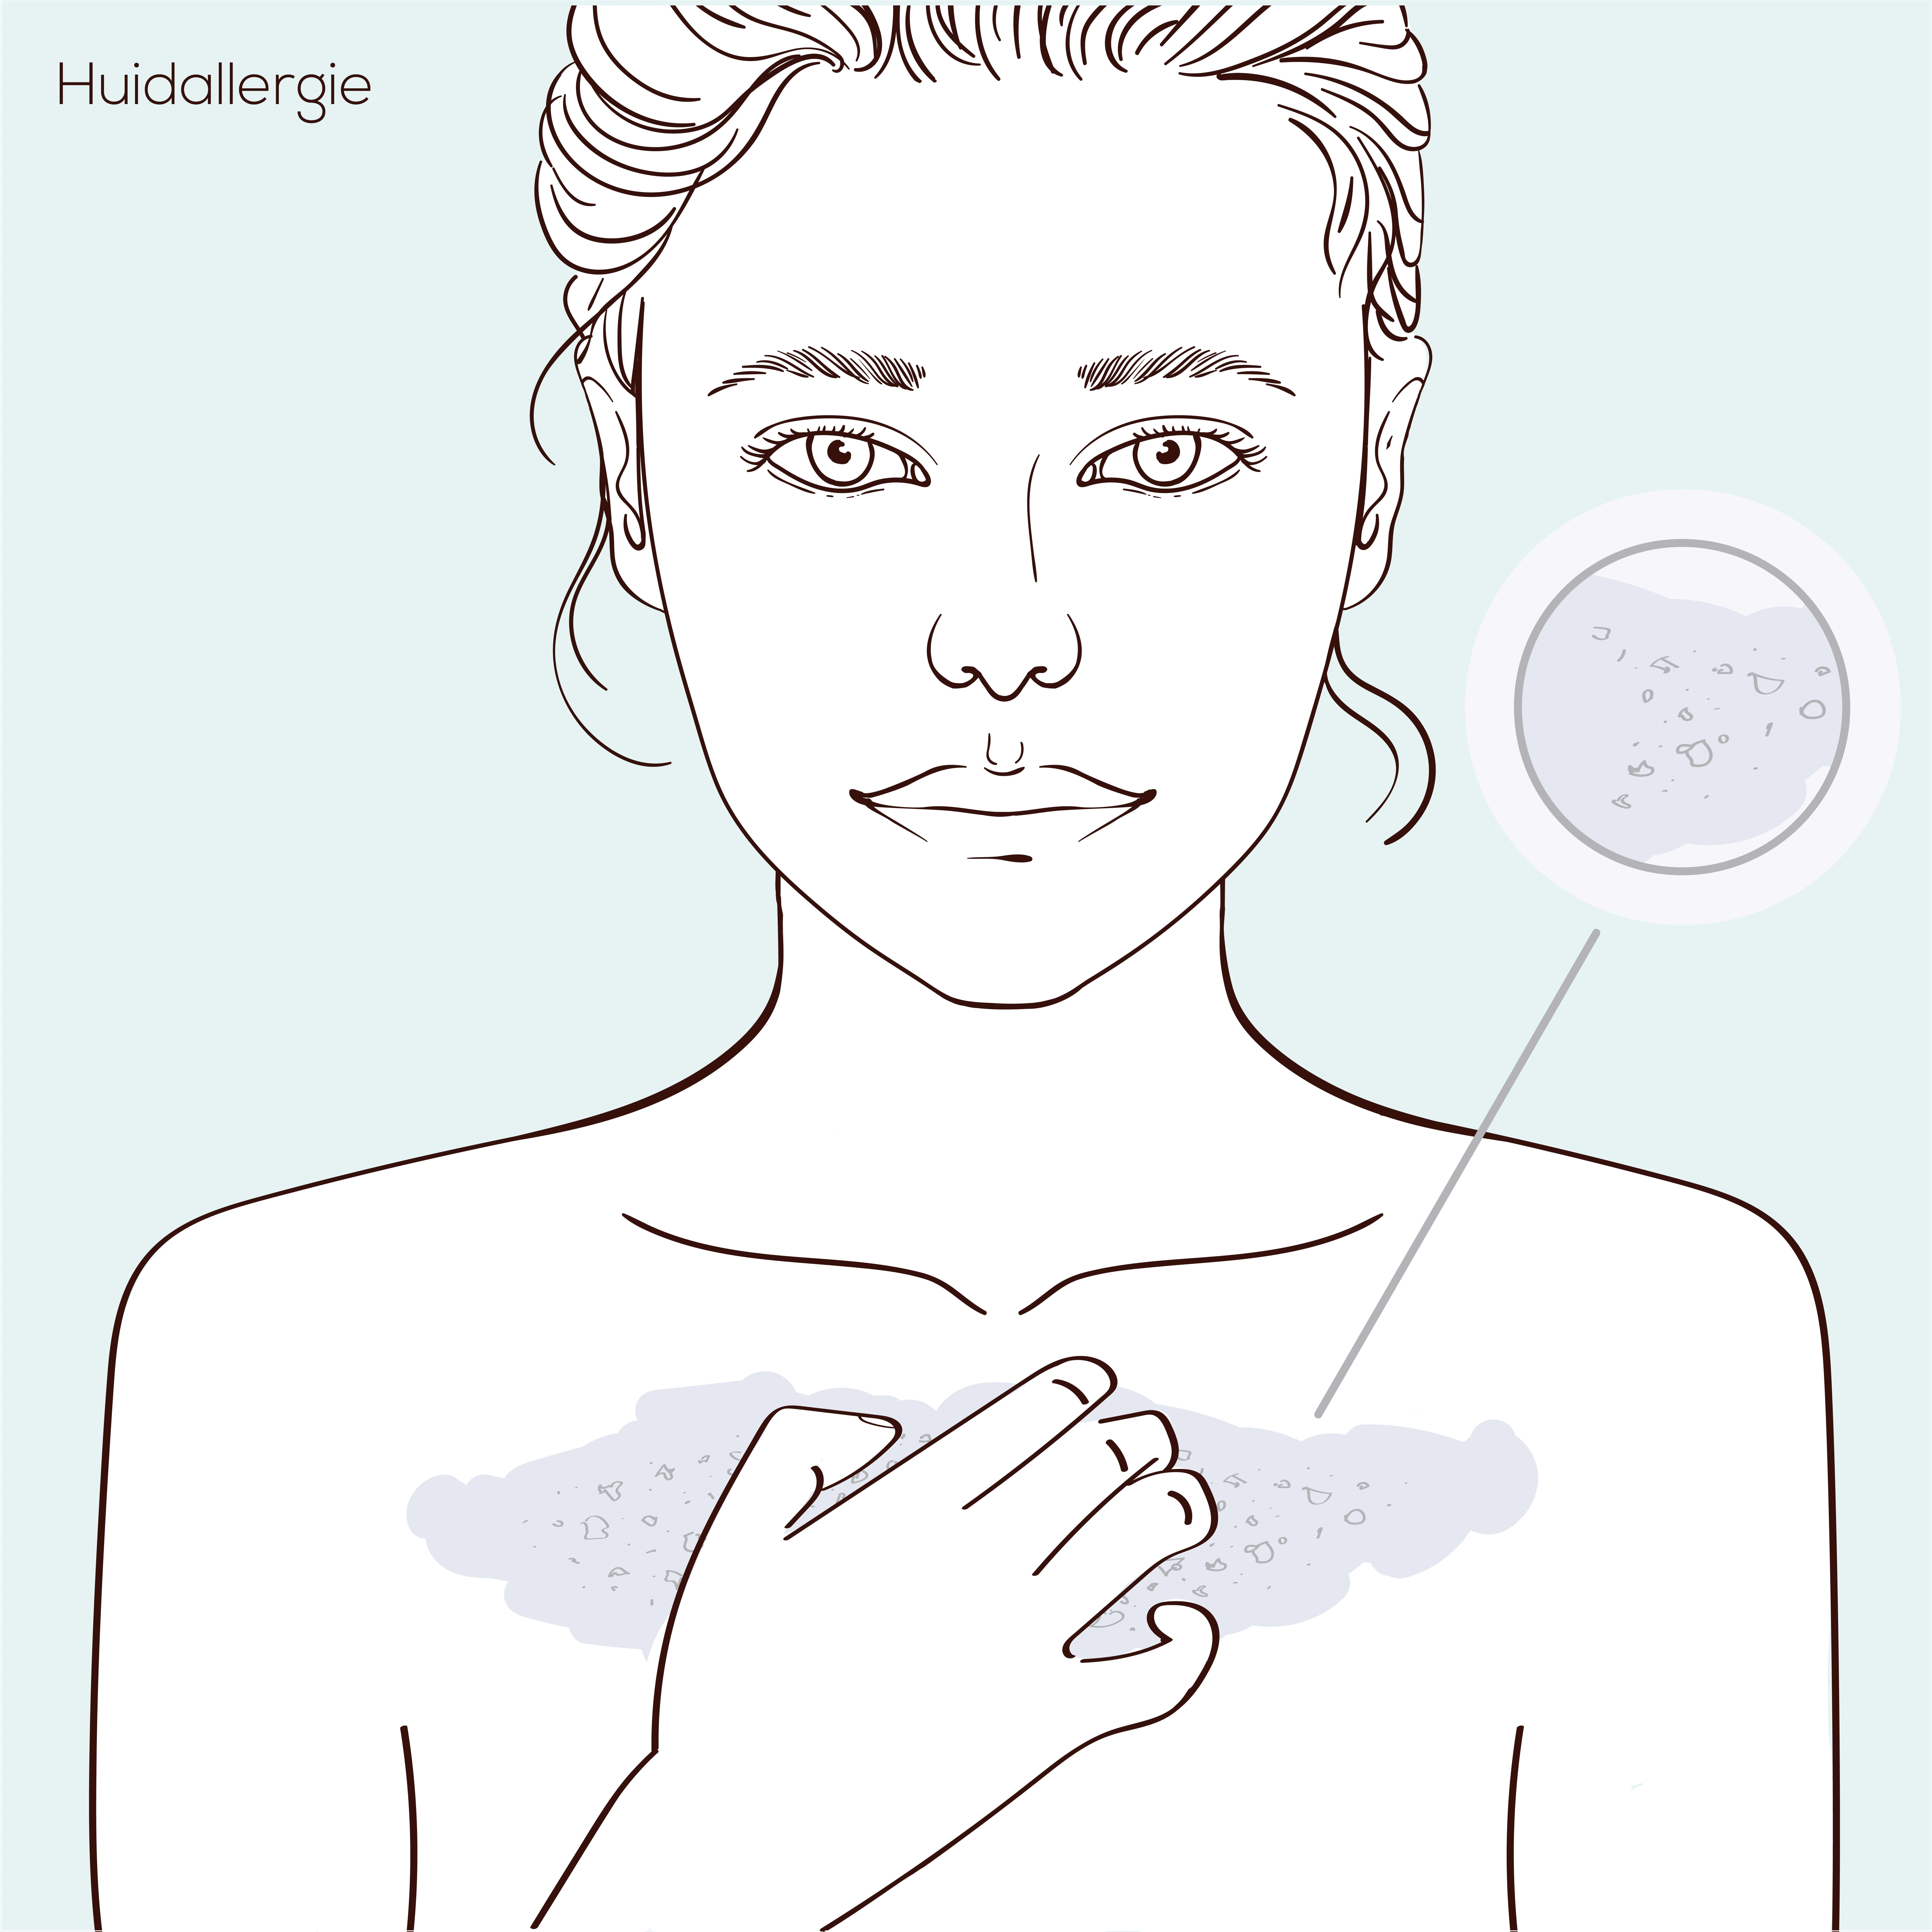 Illustratie van gezicht met huidprobleem huidallergie